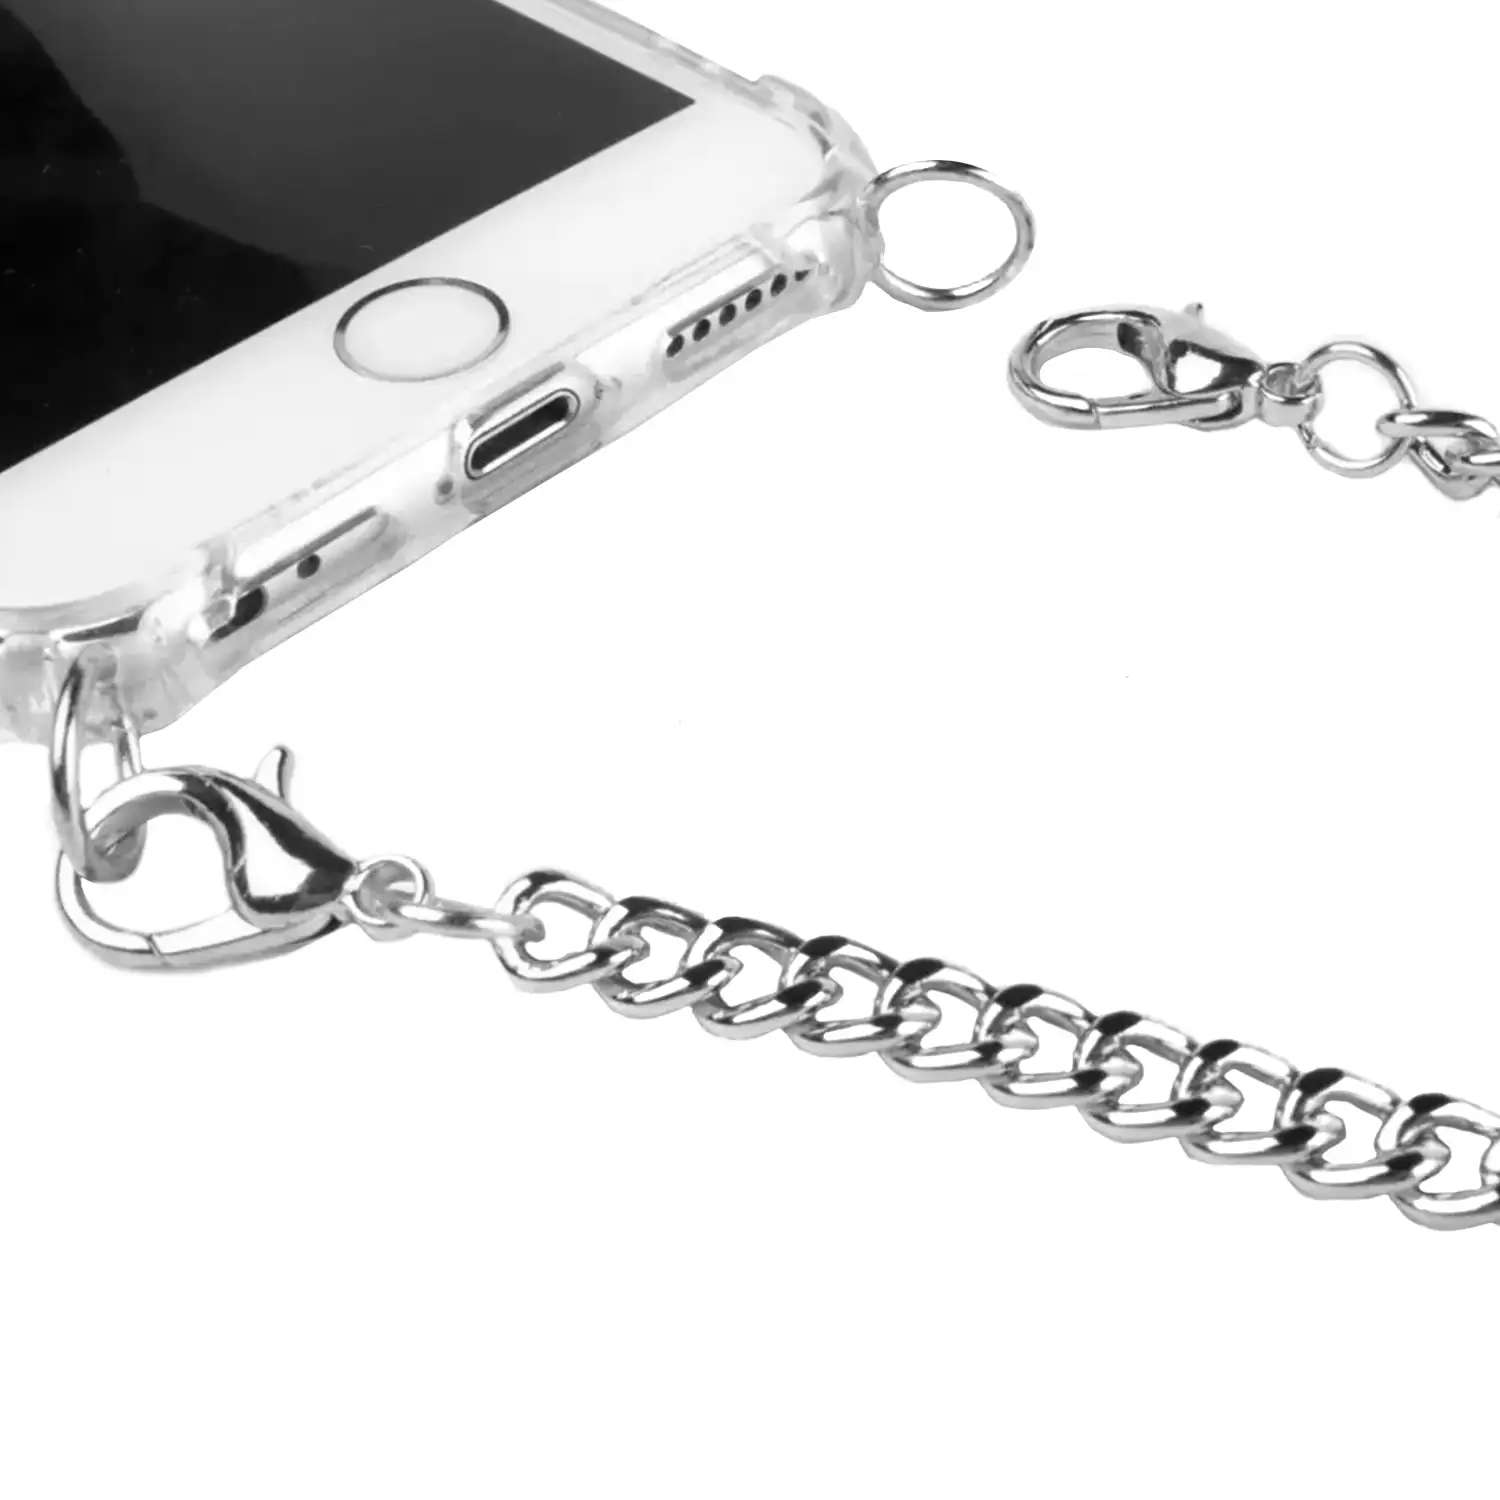 Carcasa transparente iPhone XS Max con colgante cadena metálica. Accesorio de moda, ajuste perfecto y máxima protección